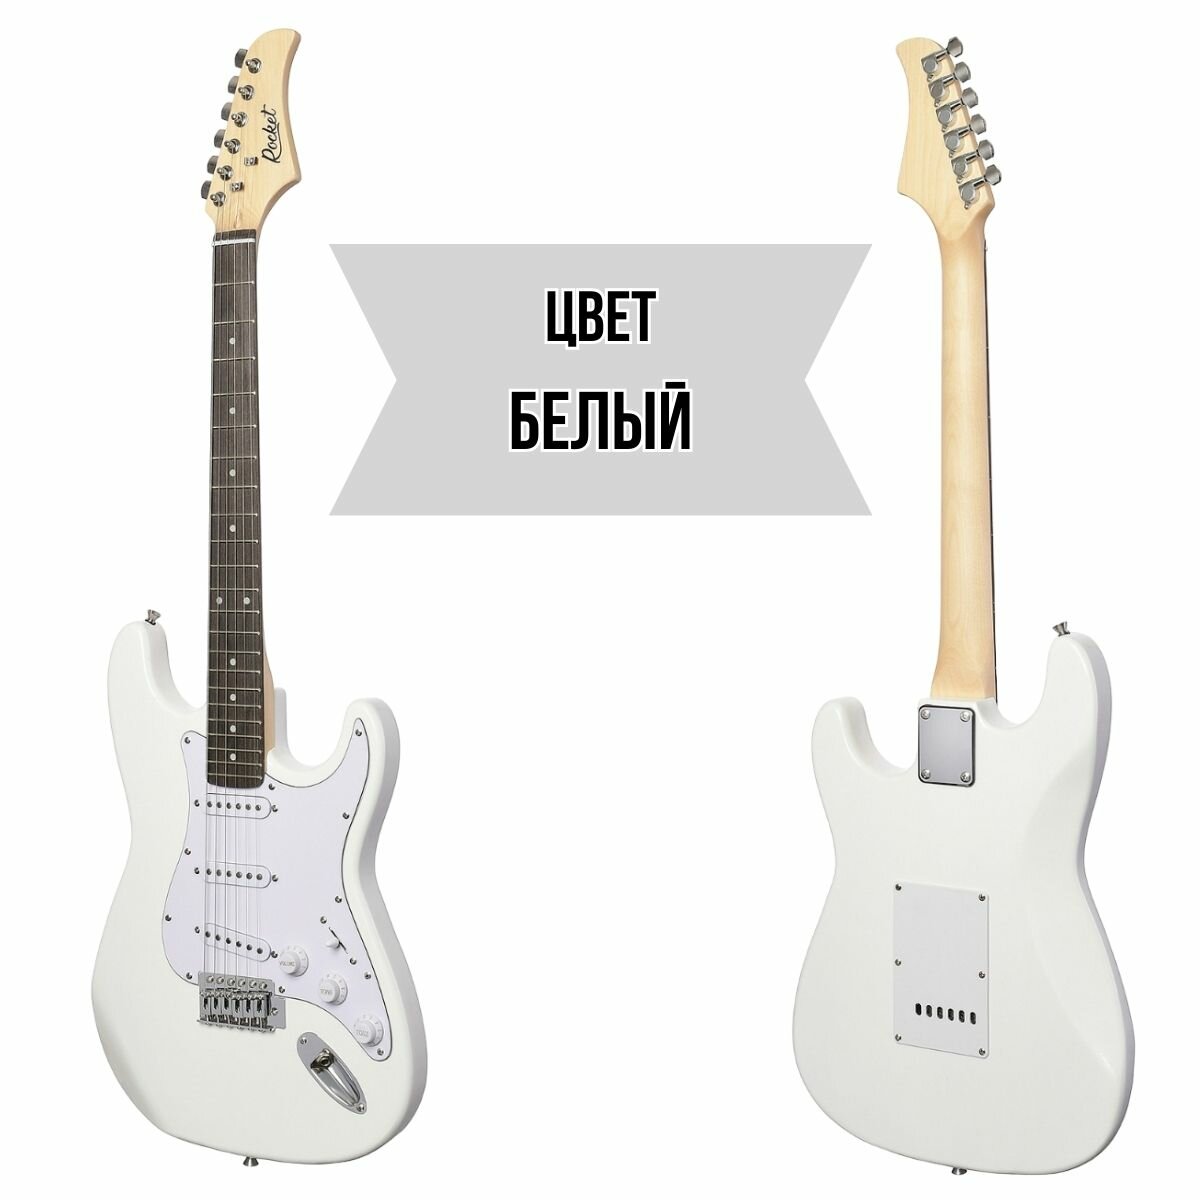 Электрогитарный набор ROCKET PACK-1 WH комплект с электрогитарой Stratocaster цвет белый и аксессуары